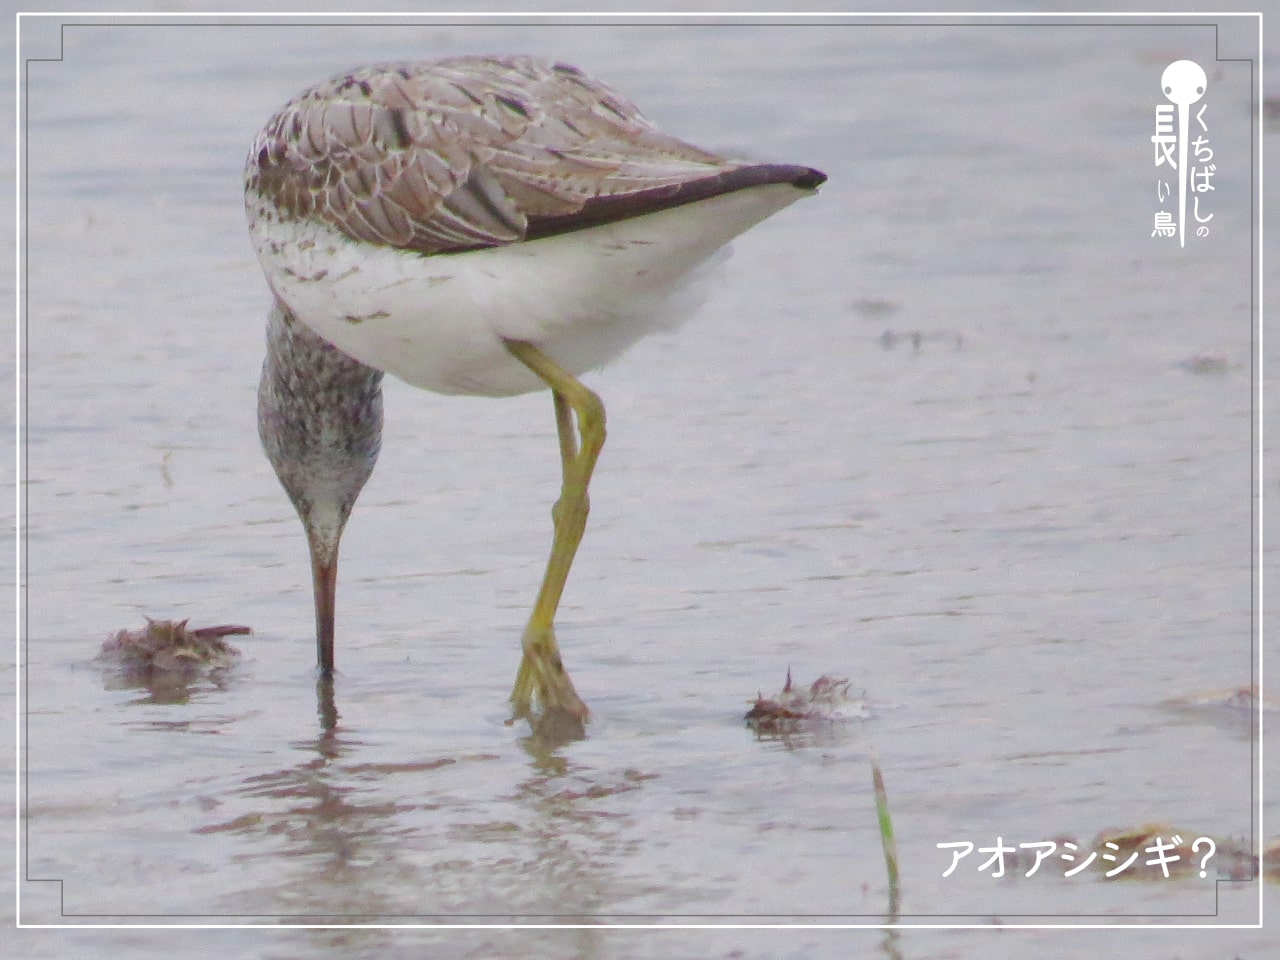 くちばしの長い鳥「アオアシシギ」と思われる鳥がくちばしで水中を探っている写真